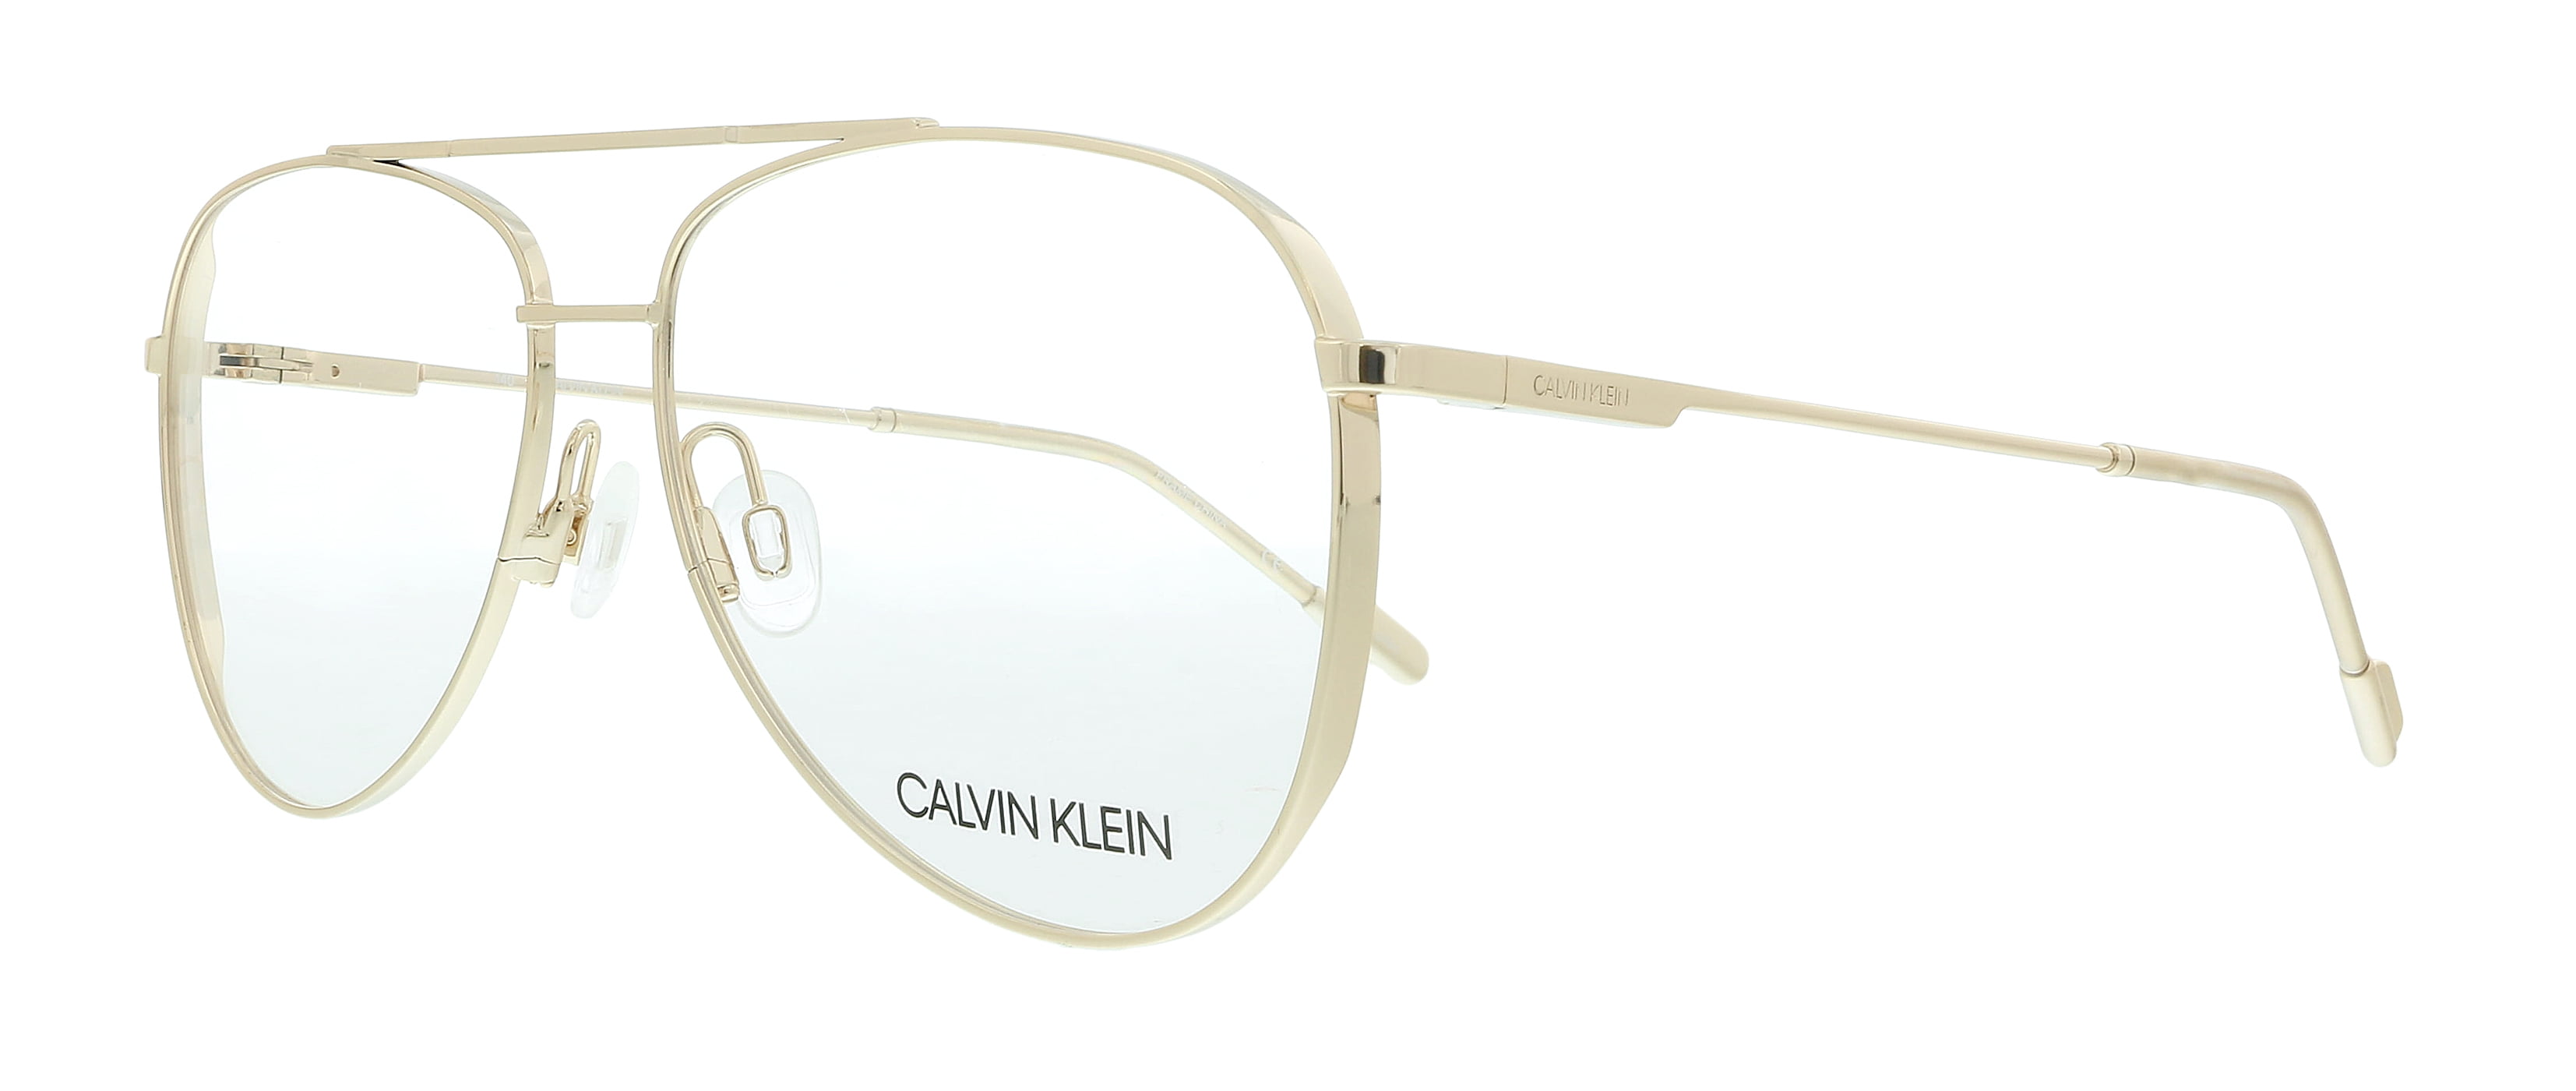 Calvin Klein CK21100 717 Shiny Gold Aviator Eyeglasses for Unisex -  